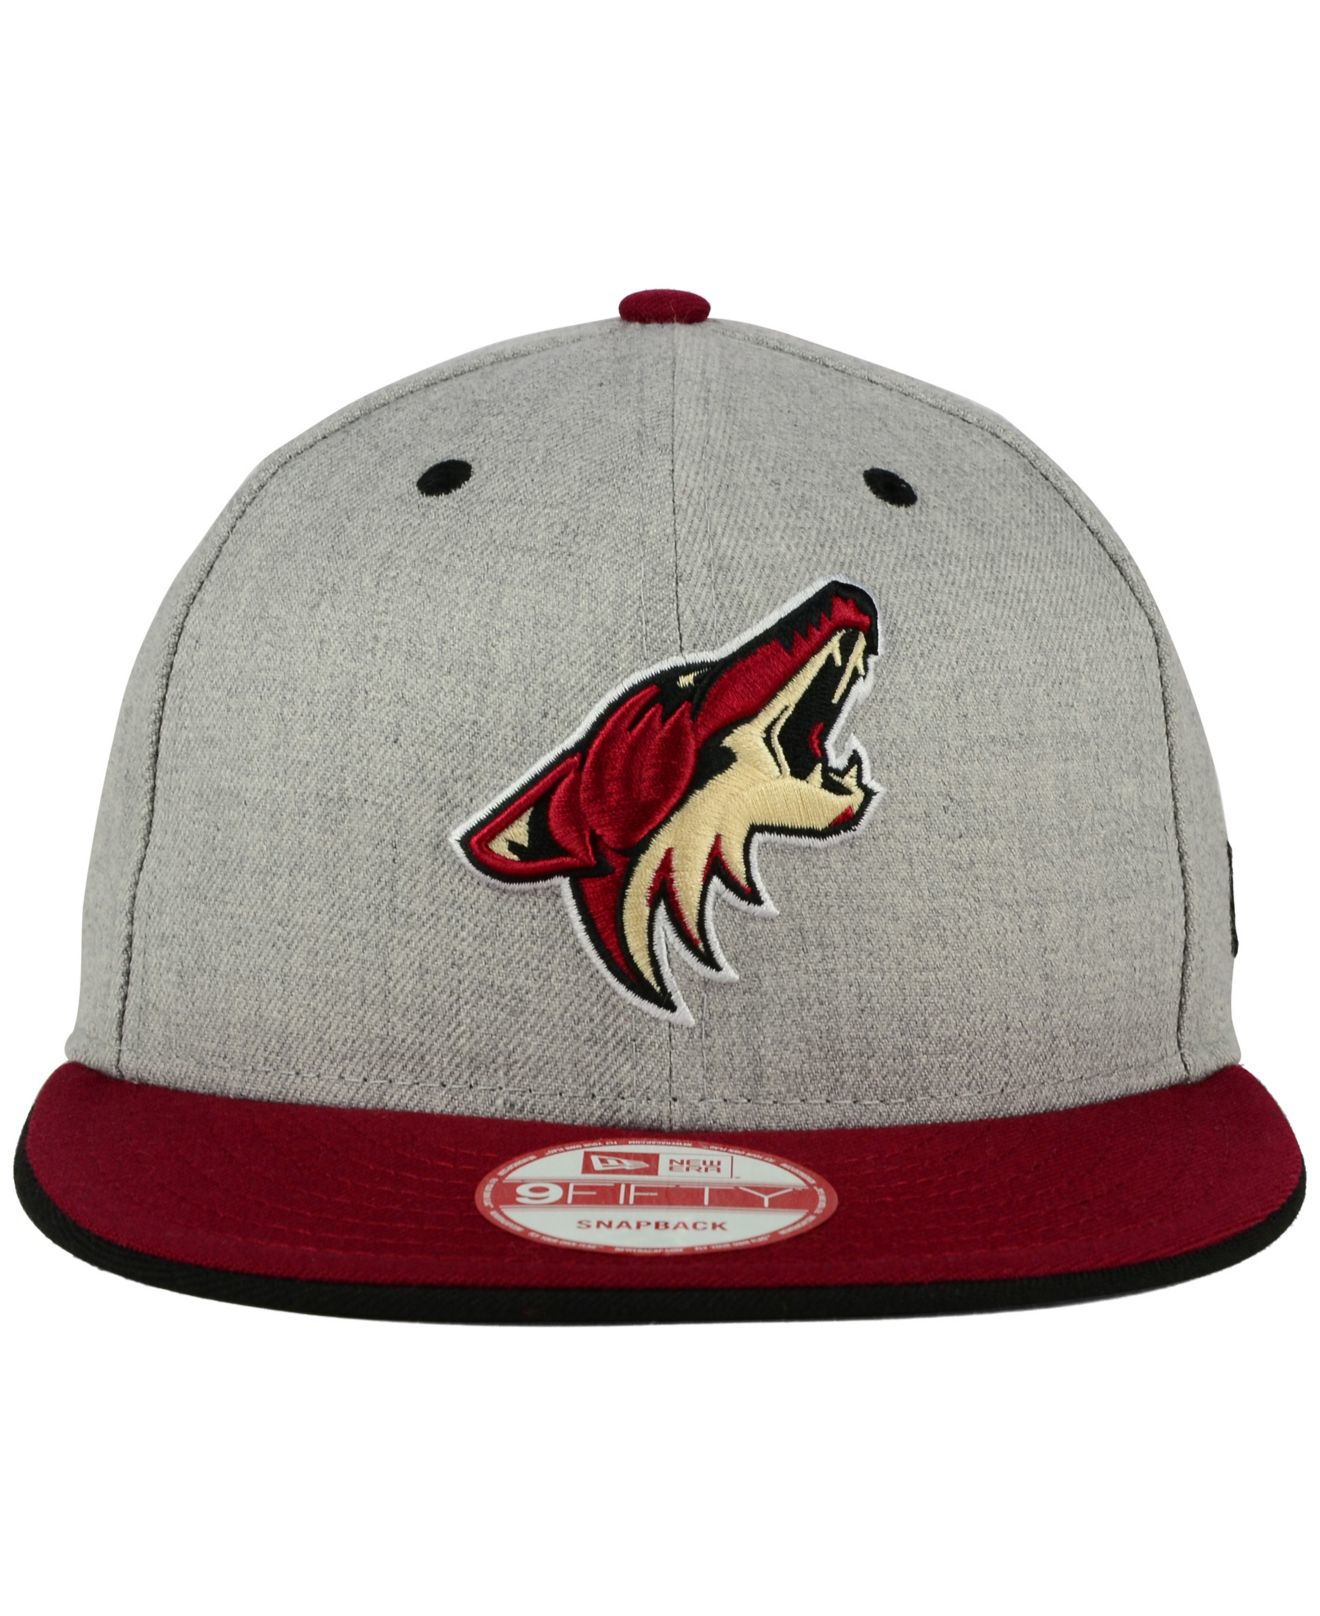 Arizona Coyotes Gear, Coyotes Jerseys, Arizona Coyotes Hats